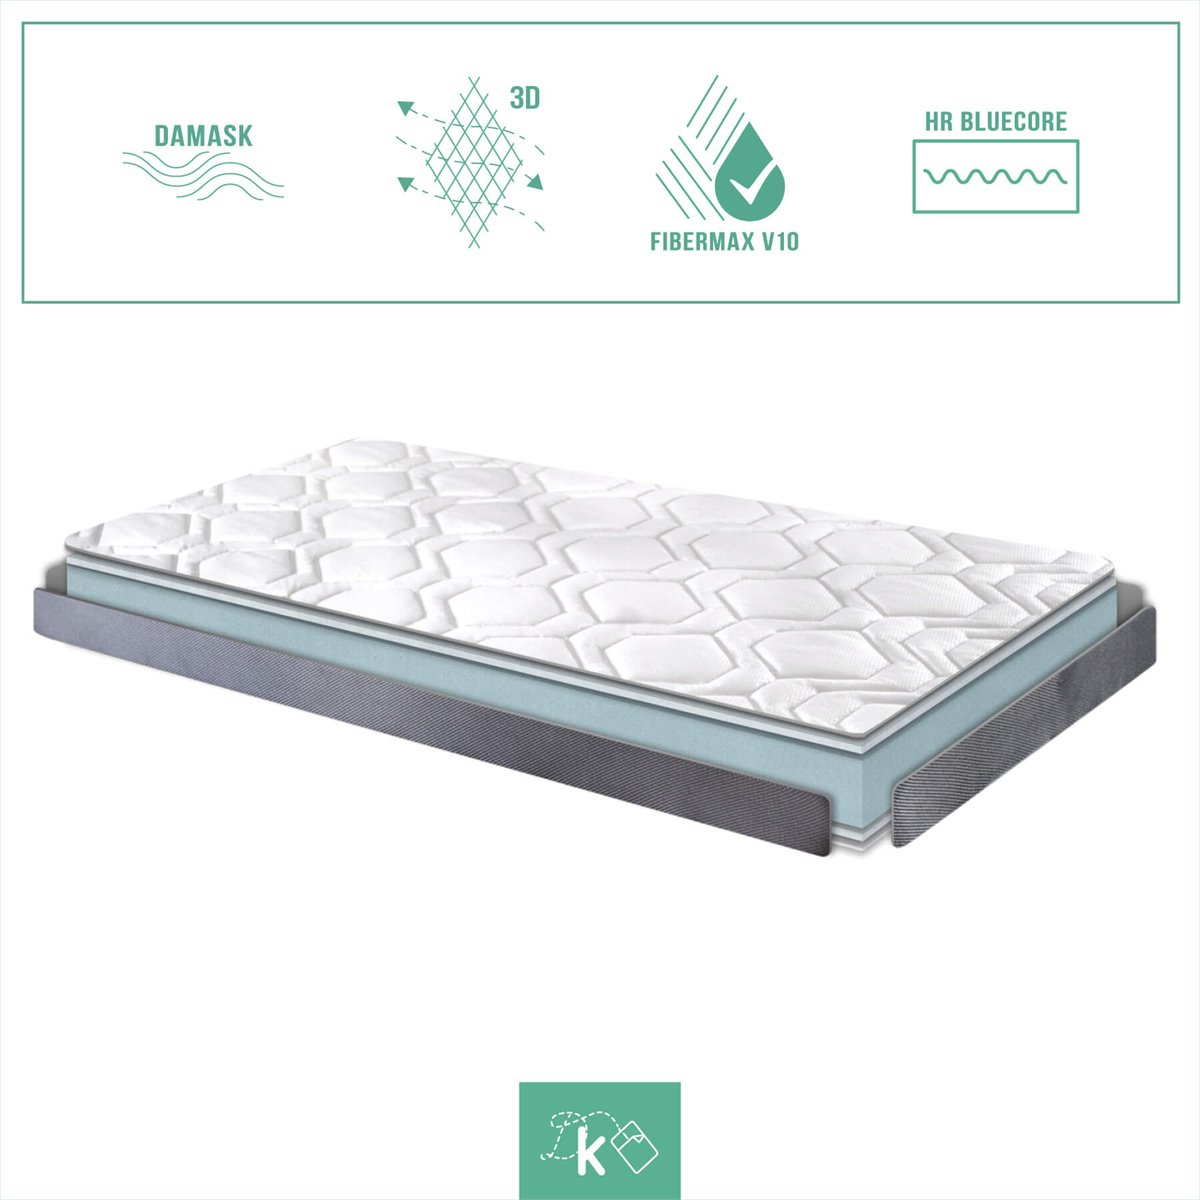 Colchon de espuma ORION CONFORT 90X180, Altura 14 CM, Reversible, Adaptable  y transpirable Ideal para camas nido